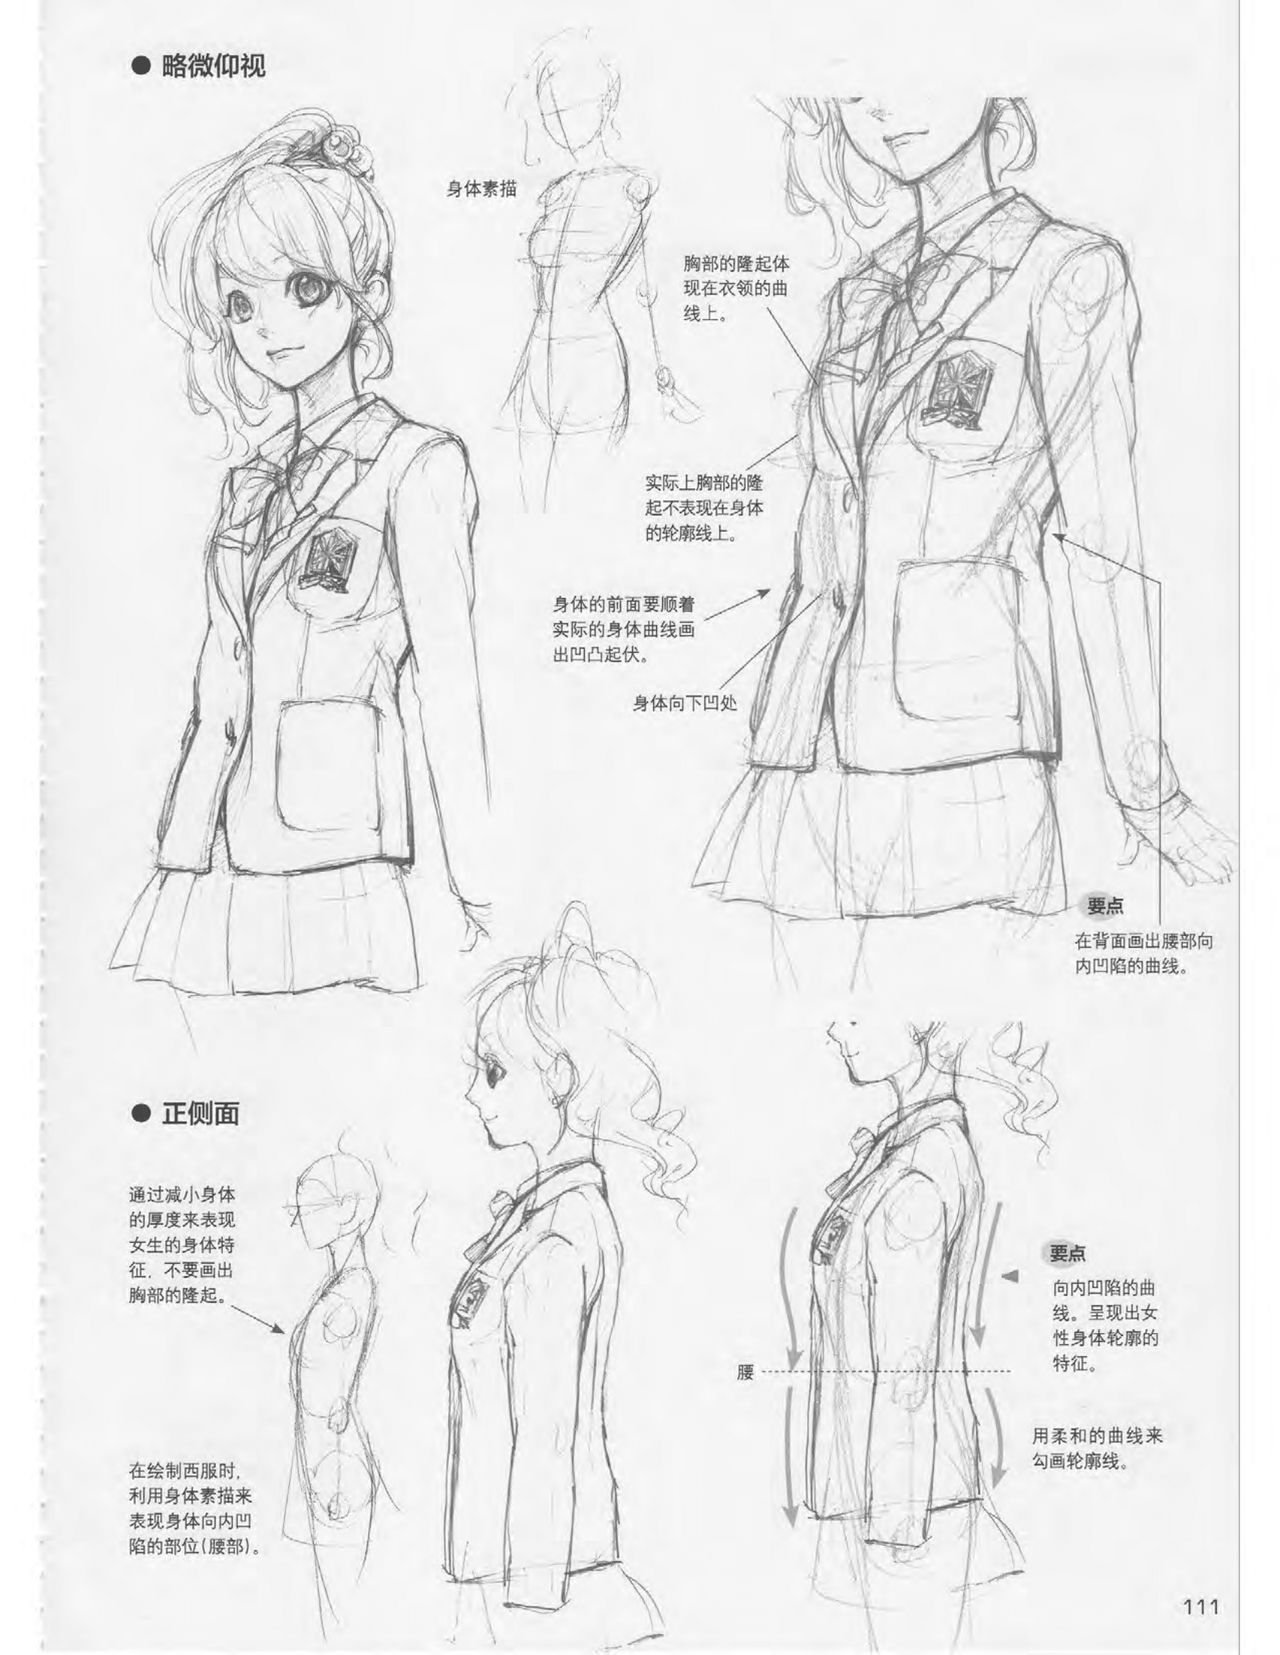 Japanese Manga Master Lecture 3: Lin Akira and Kakumaru Maru Talk About Glamorous Character Modeling 111